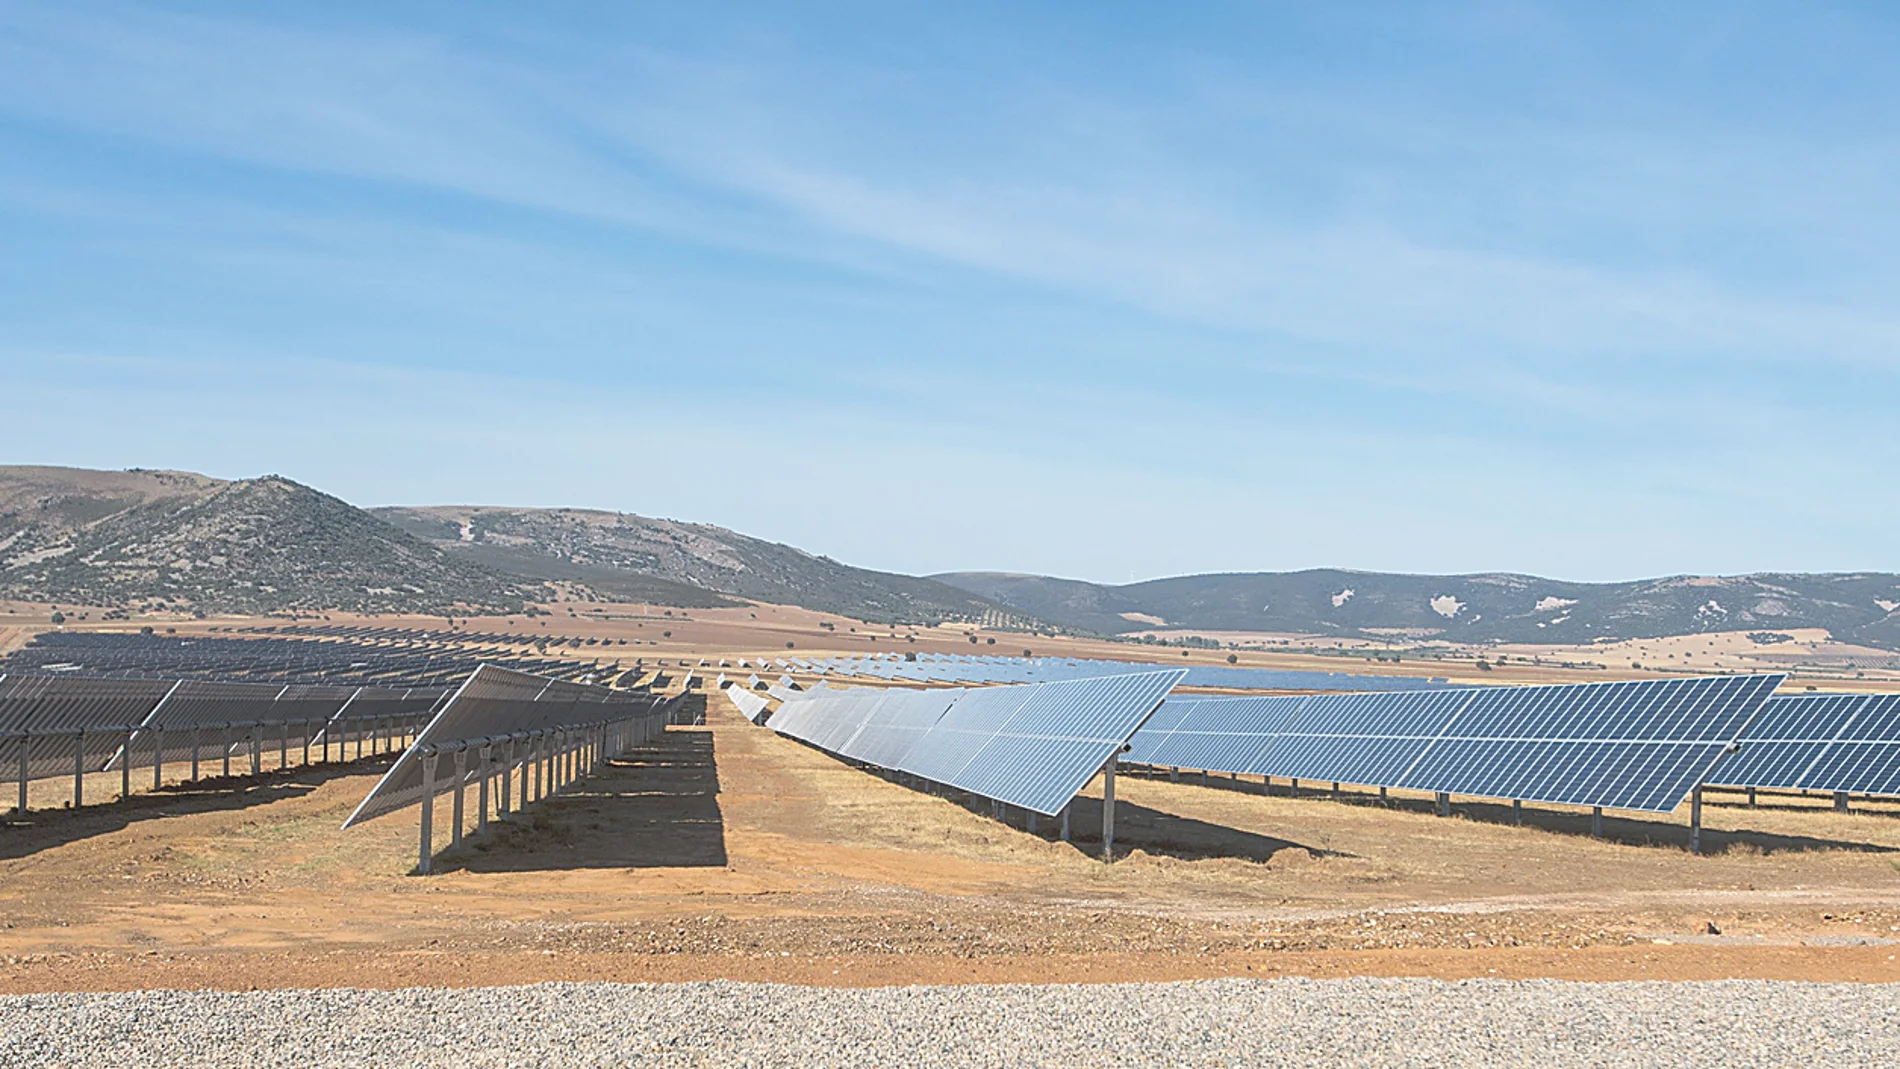 Picón, el mayor complejo solar fotovoltaico de Castilla-La Mancha y uno de los más grandes de España, operado por Naturgy